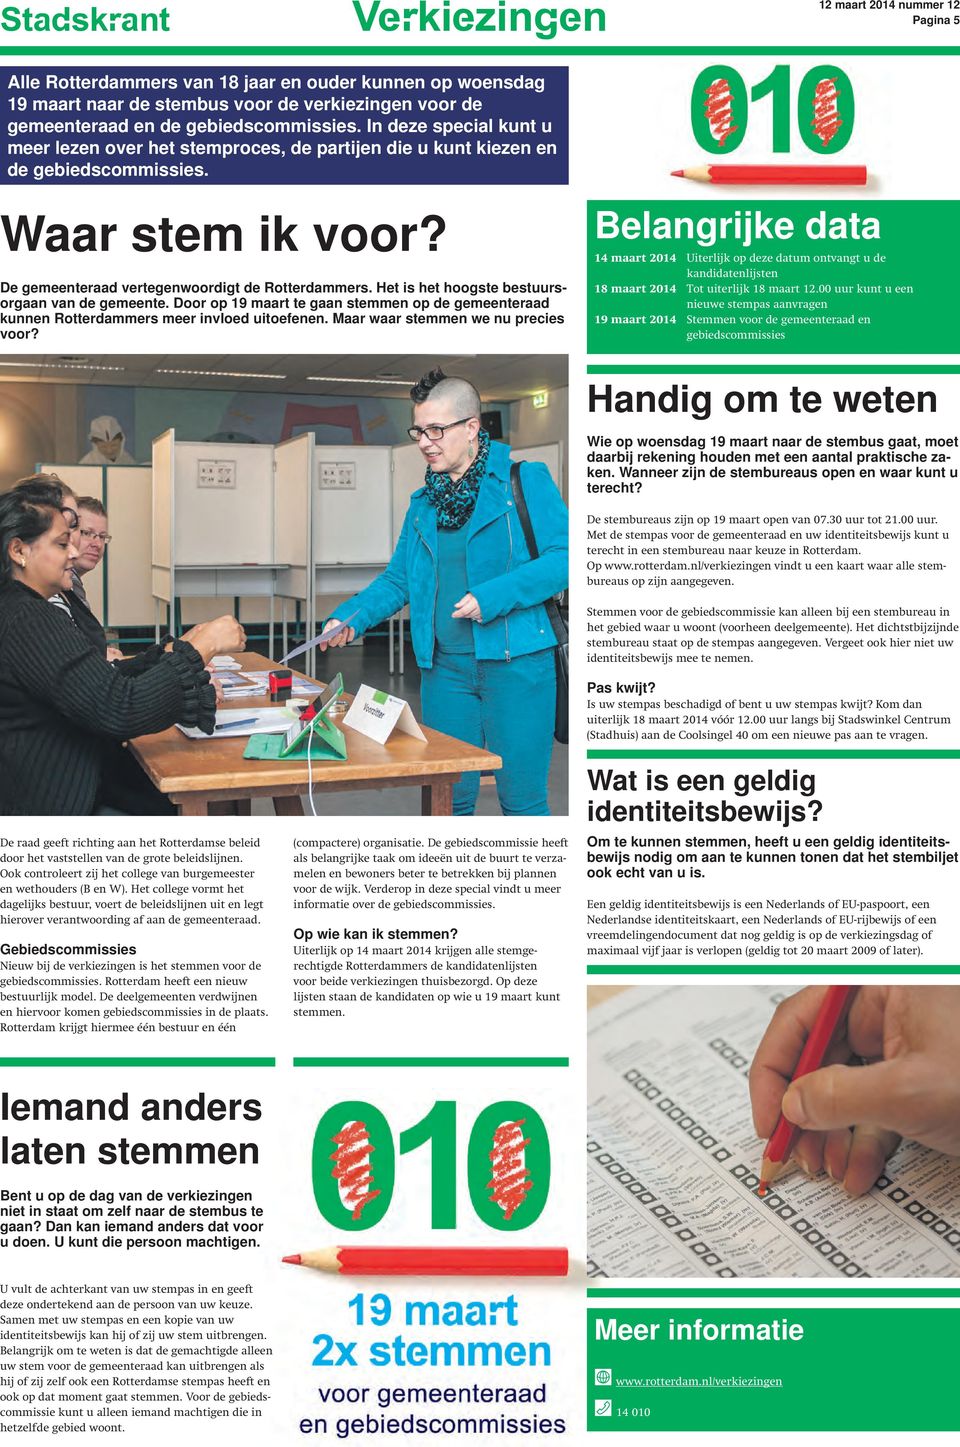 Het is het hoogste bestuursorgaan van de gemeente. Door op 19 maart te gaan stemmen op de gemeenteraad kunnen Rotterdammers meer invloed uitoefenen.